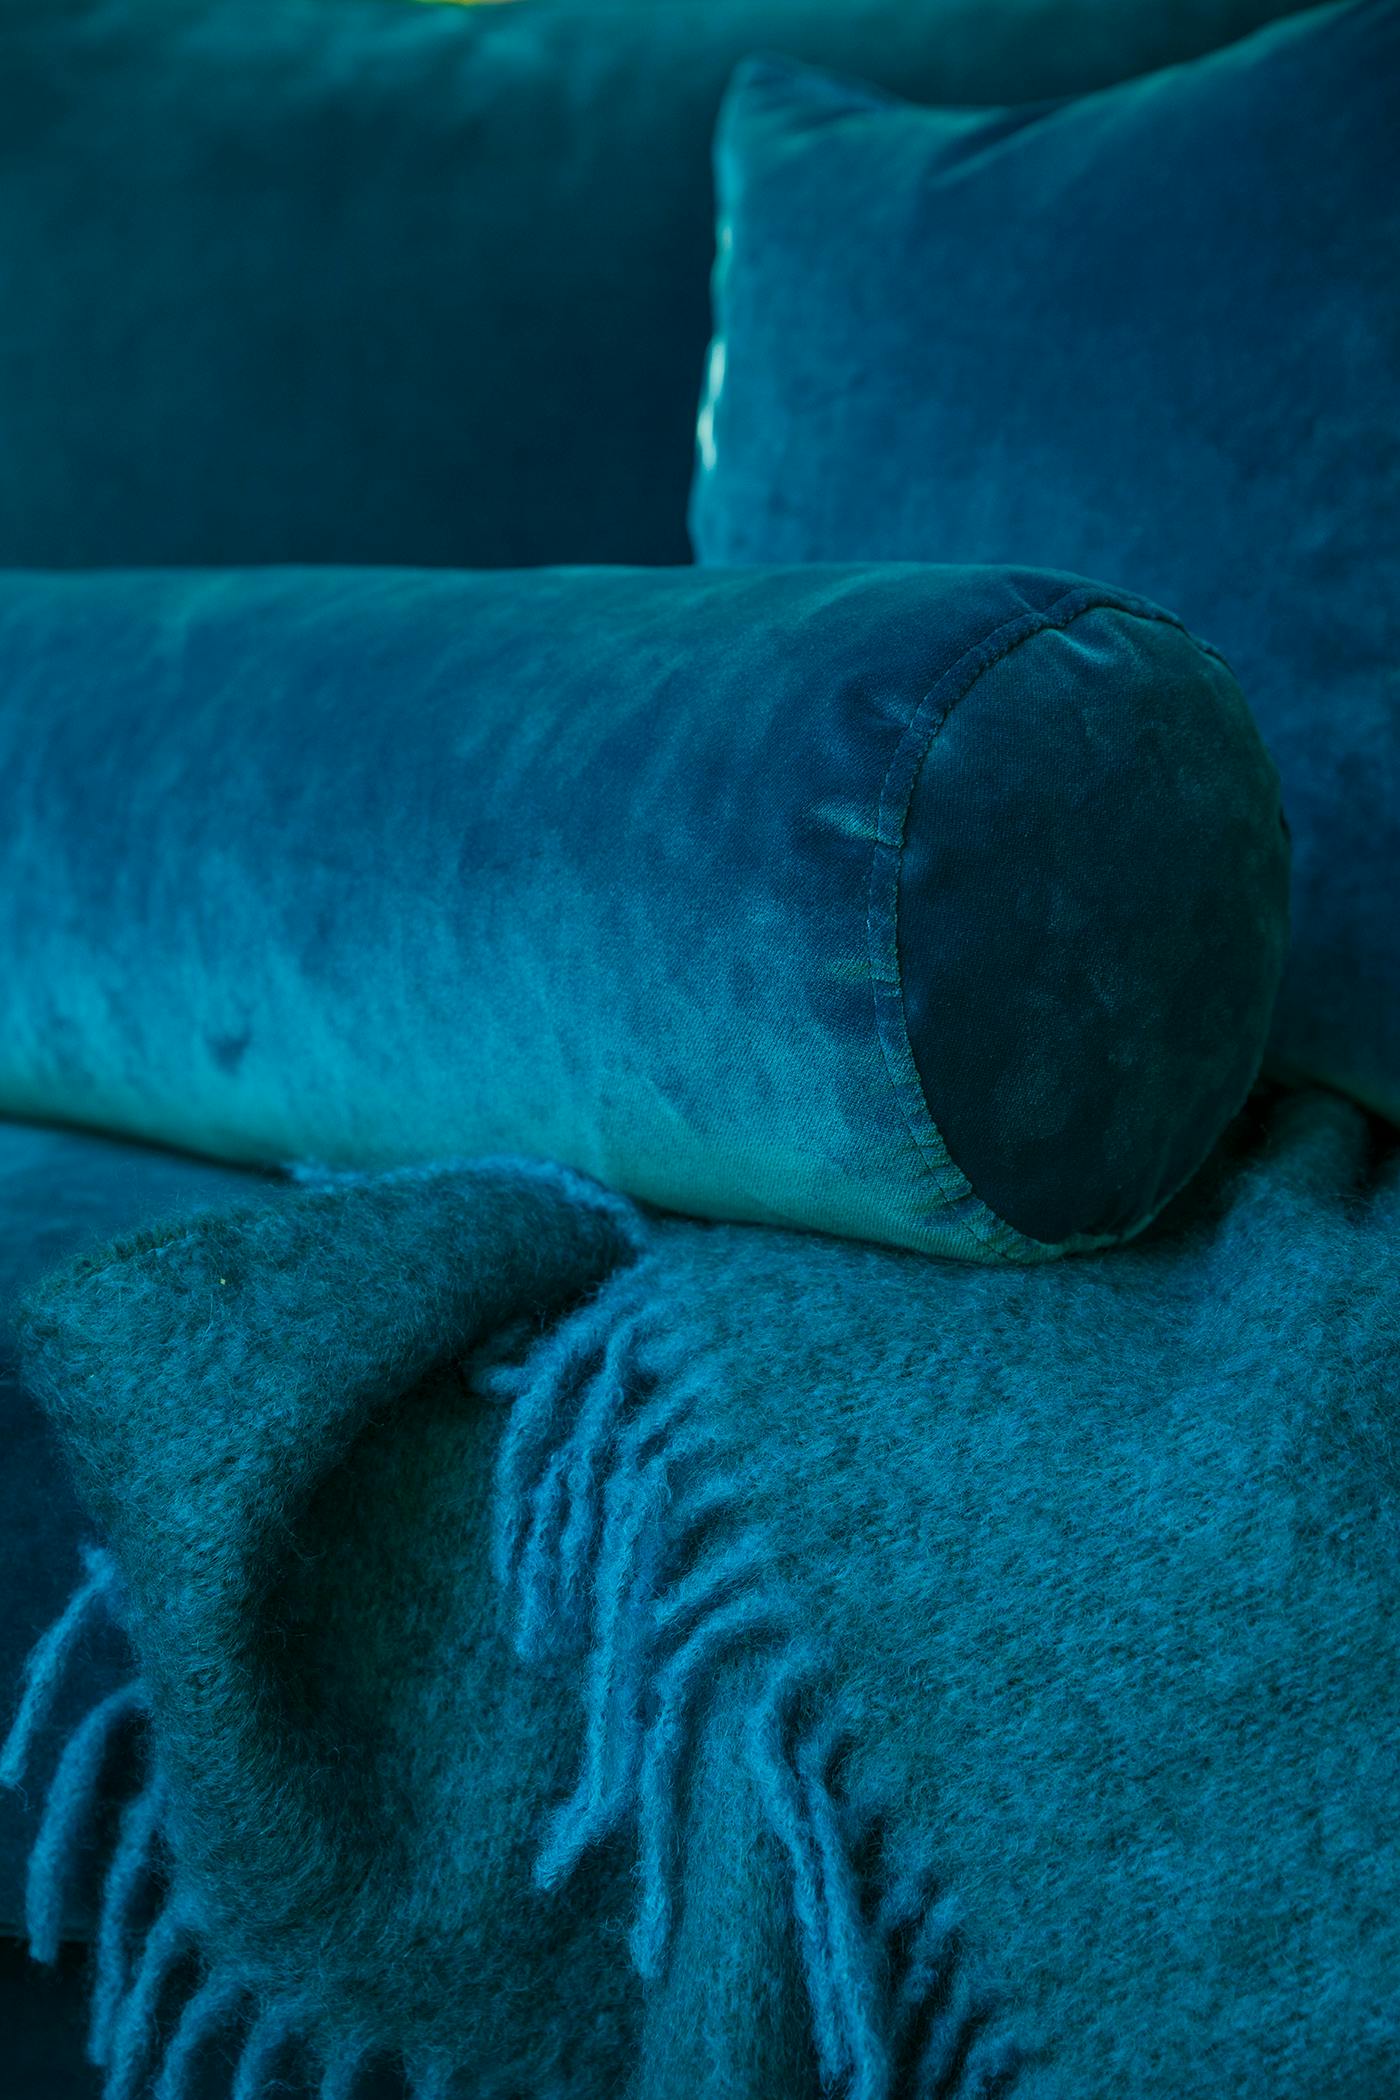 Cylinderkudde, 19x60cm, i blå polyestersammet. Blå mohairpläd, 150x140cm.